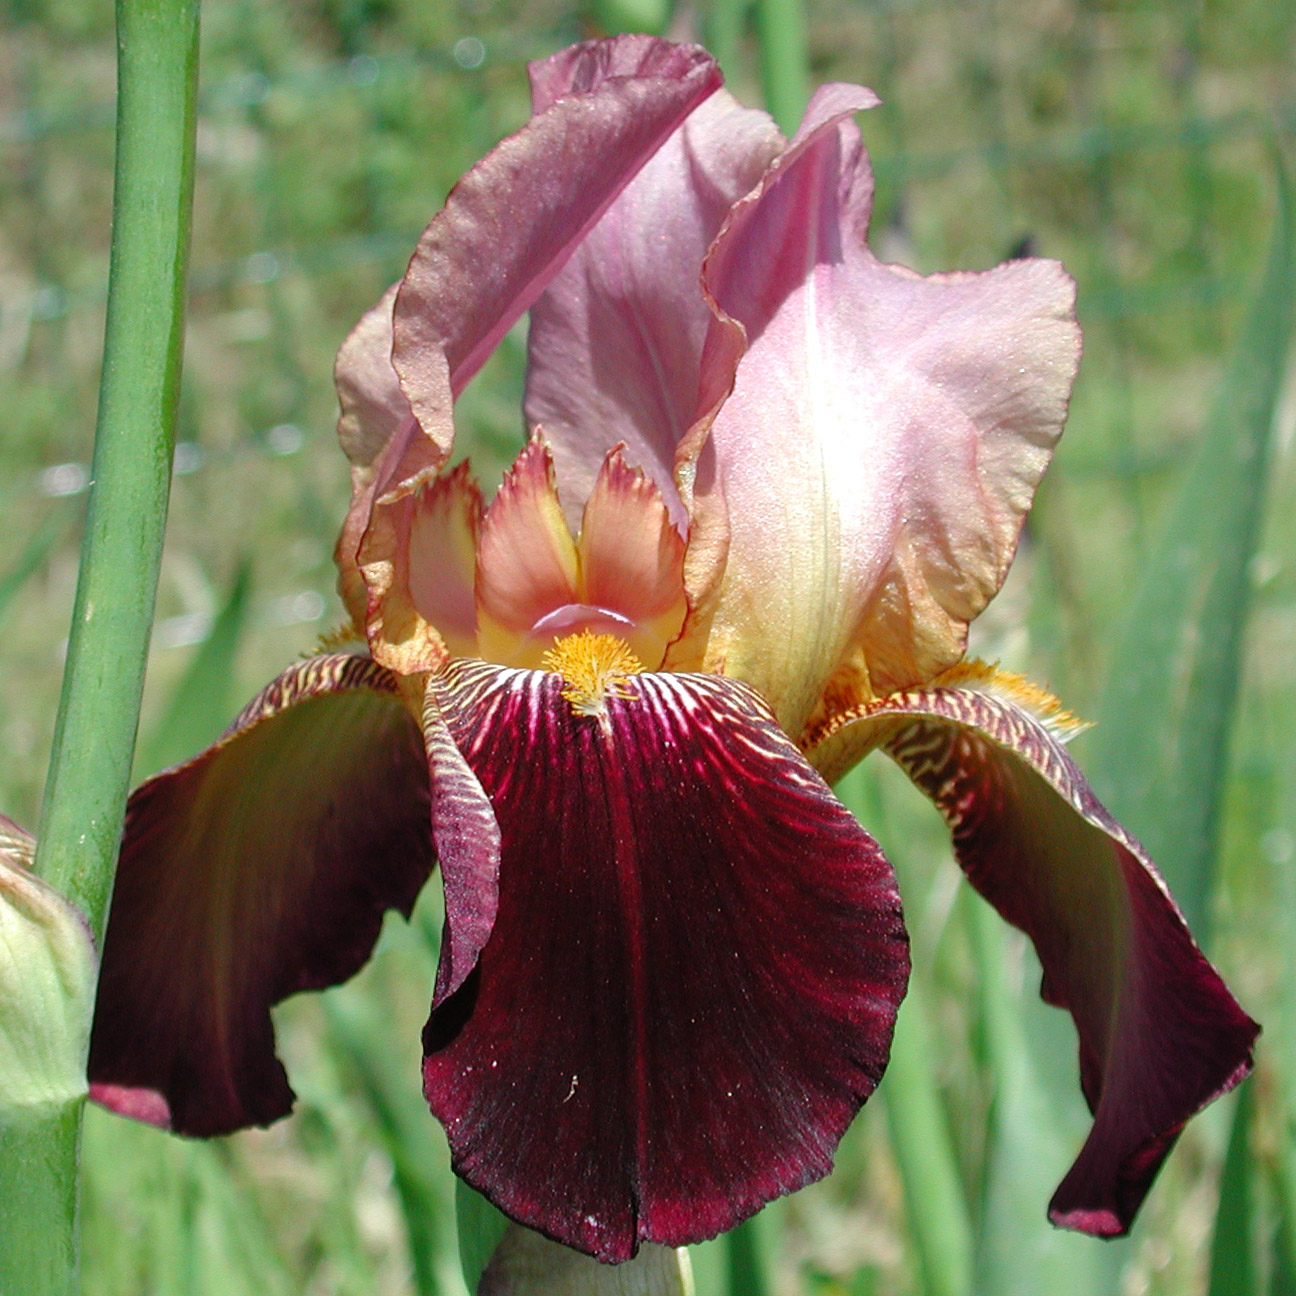 Iris with warm tones